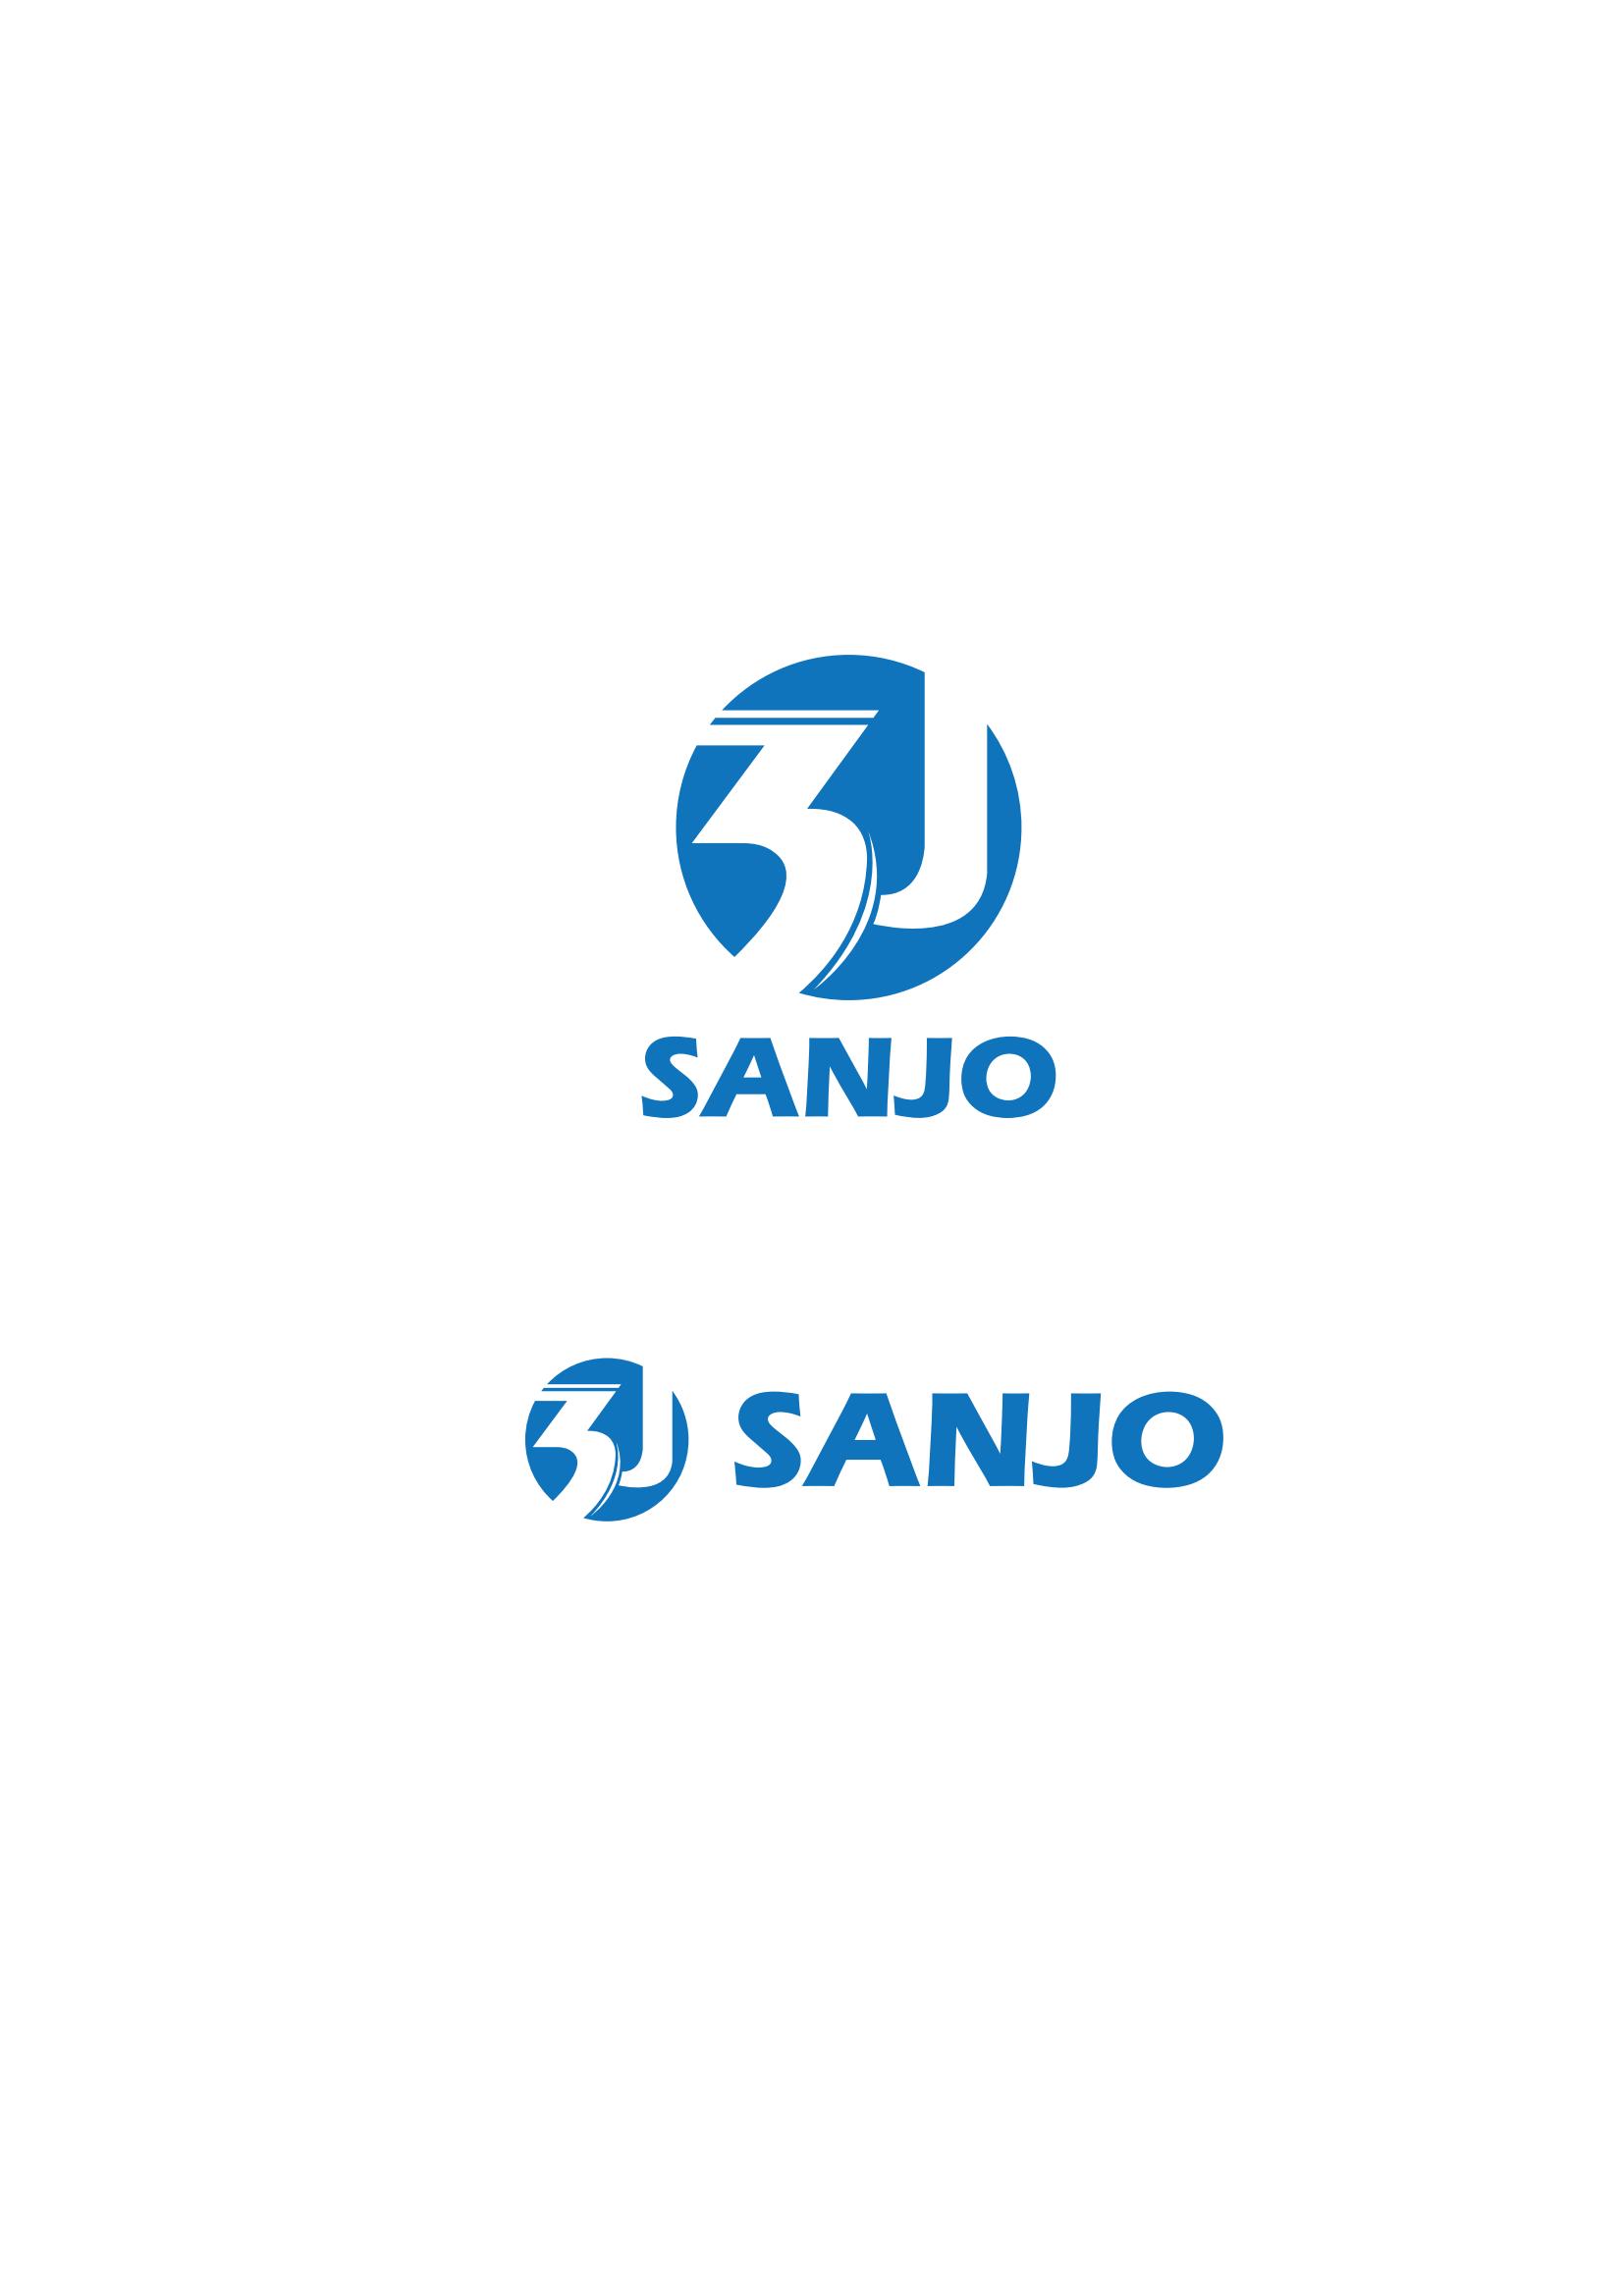 Jiangsu Sanjo Intelligent Technology Co., Ltd